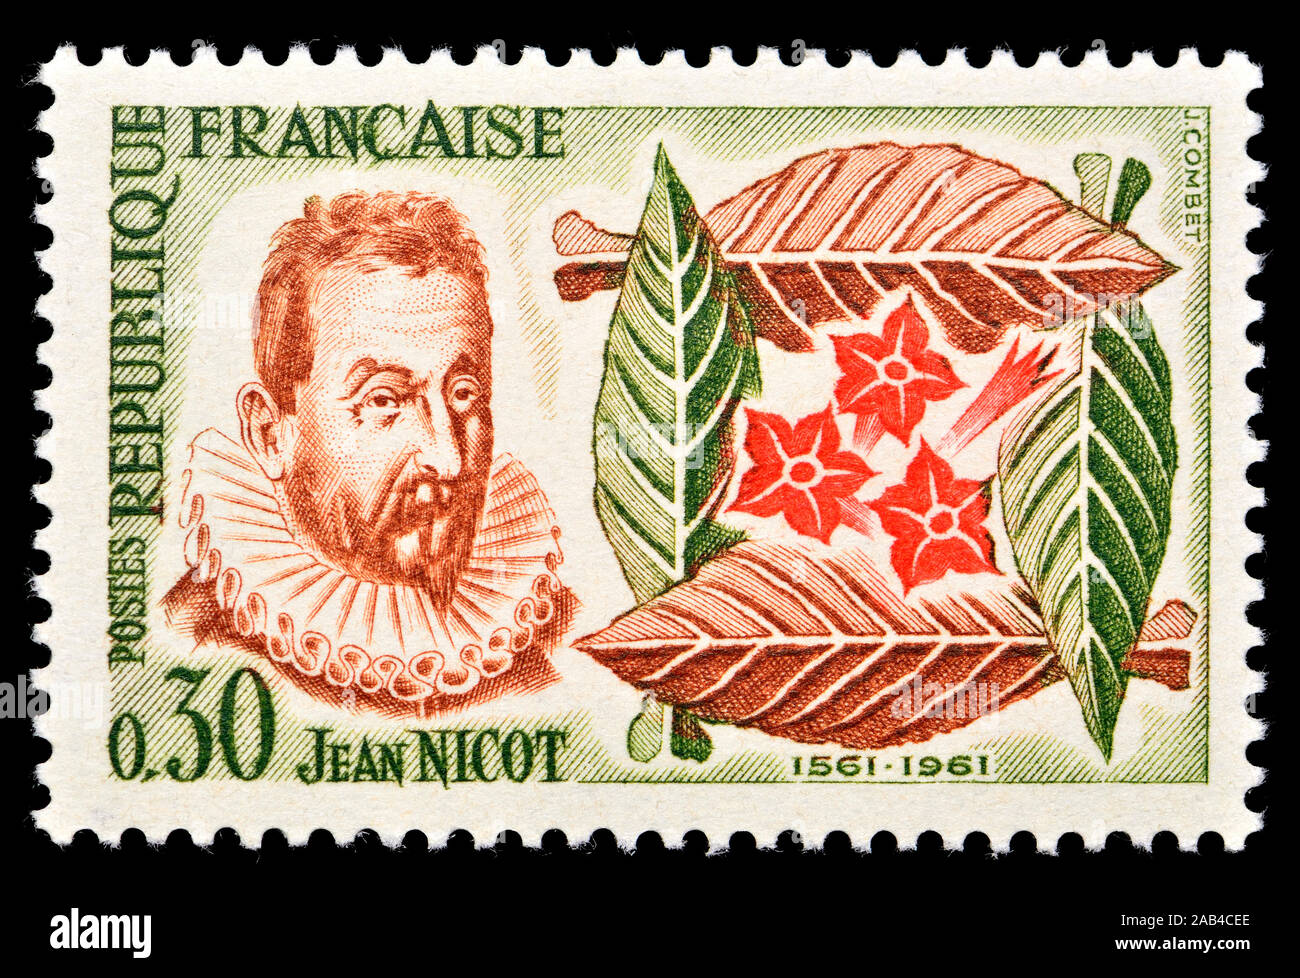 Sello francés (1961) : Jean Nicot (1530-1604), estudioso y diplomático francés. Introdujo el tabaco en Francia Foto de stock